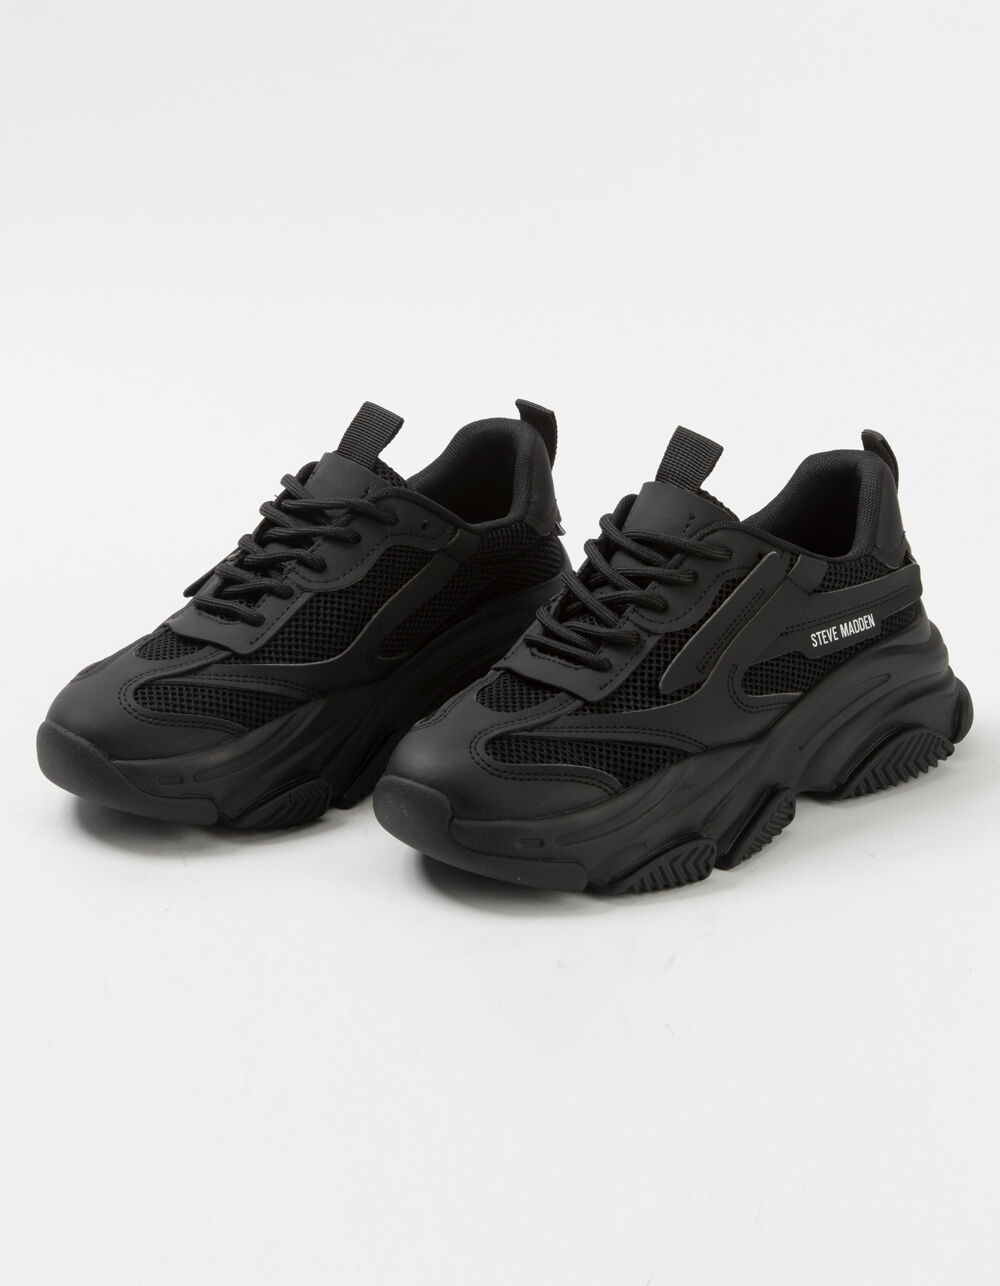 Steve Madden Possession Sneakers Black, Women's, Size: 8.5